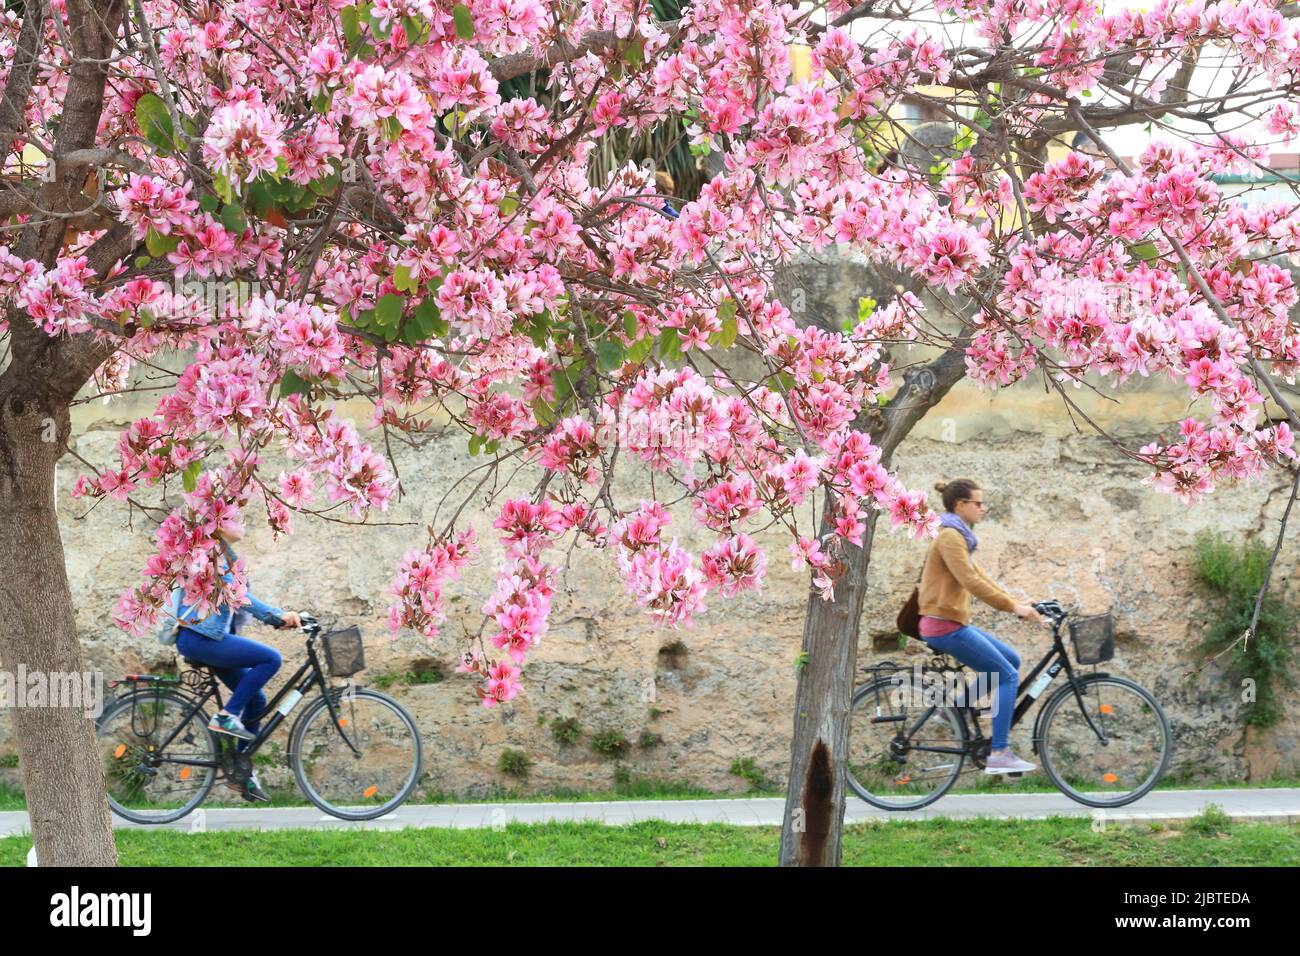 Spain, Valencia, Turia Gardens (Jardín del Turia), bike ride in the public park opened in 1986, trees in bloom in spring Stock Photo